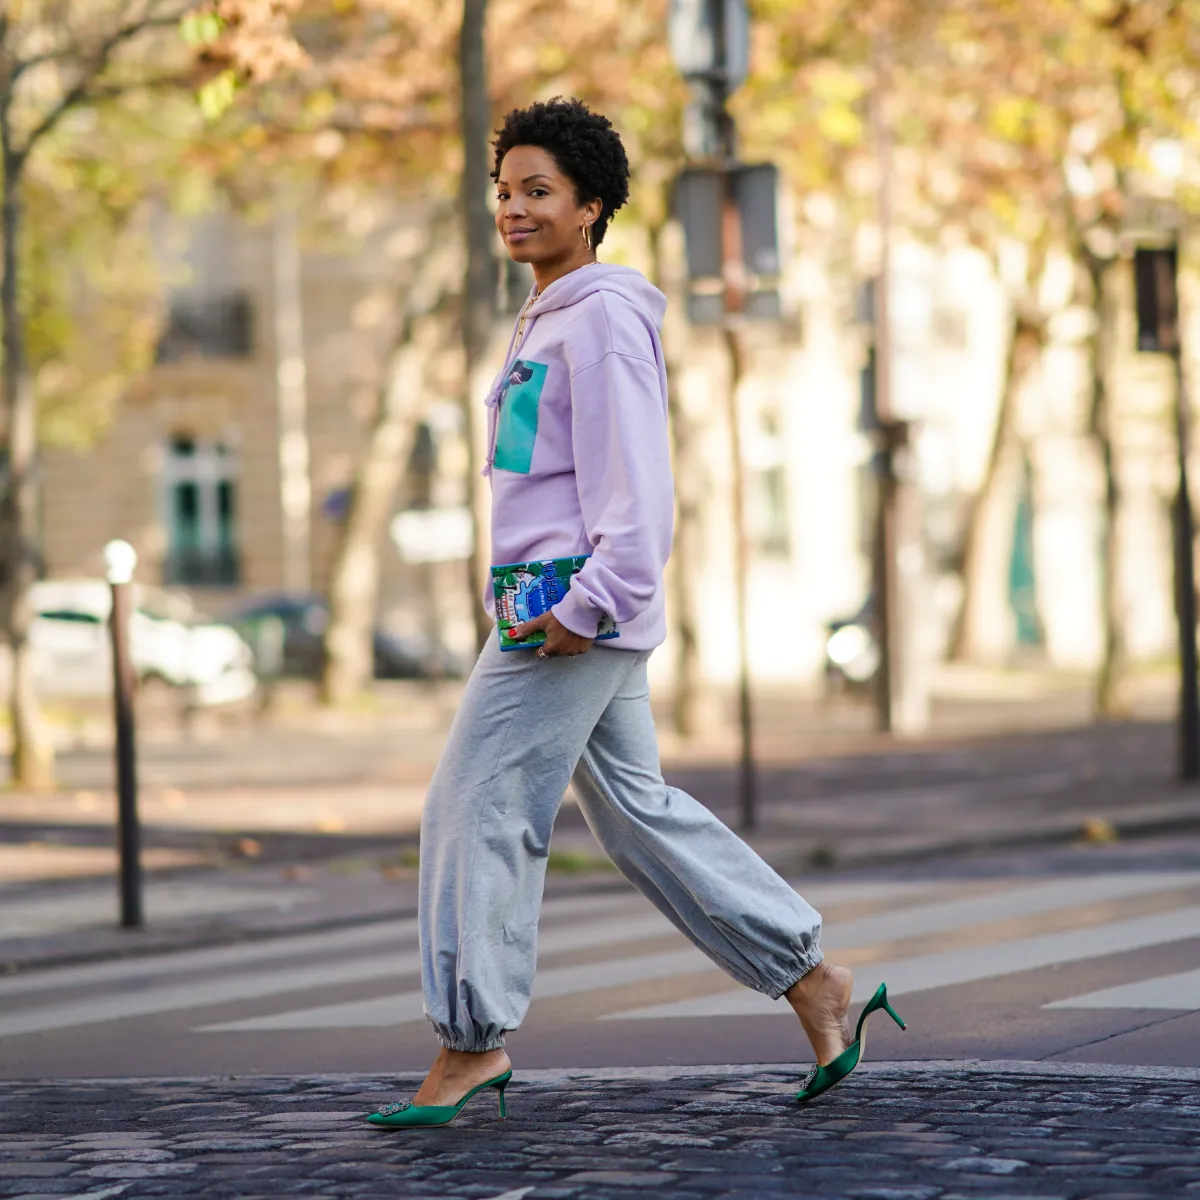 comment porter le jogging femme en 2023 guide de style